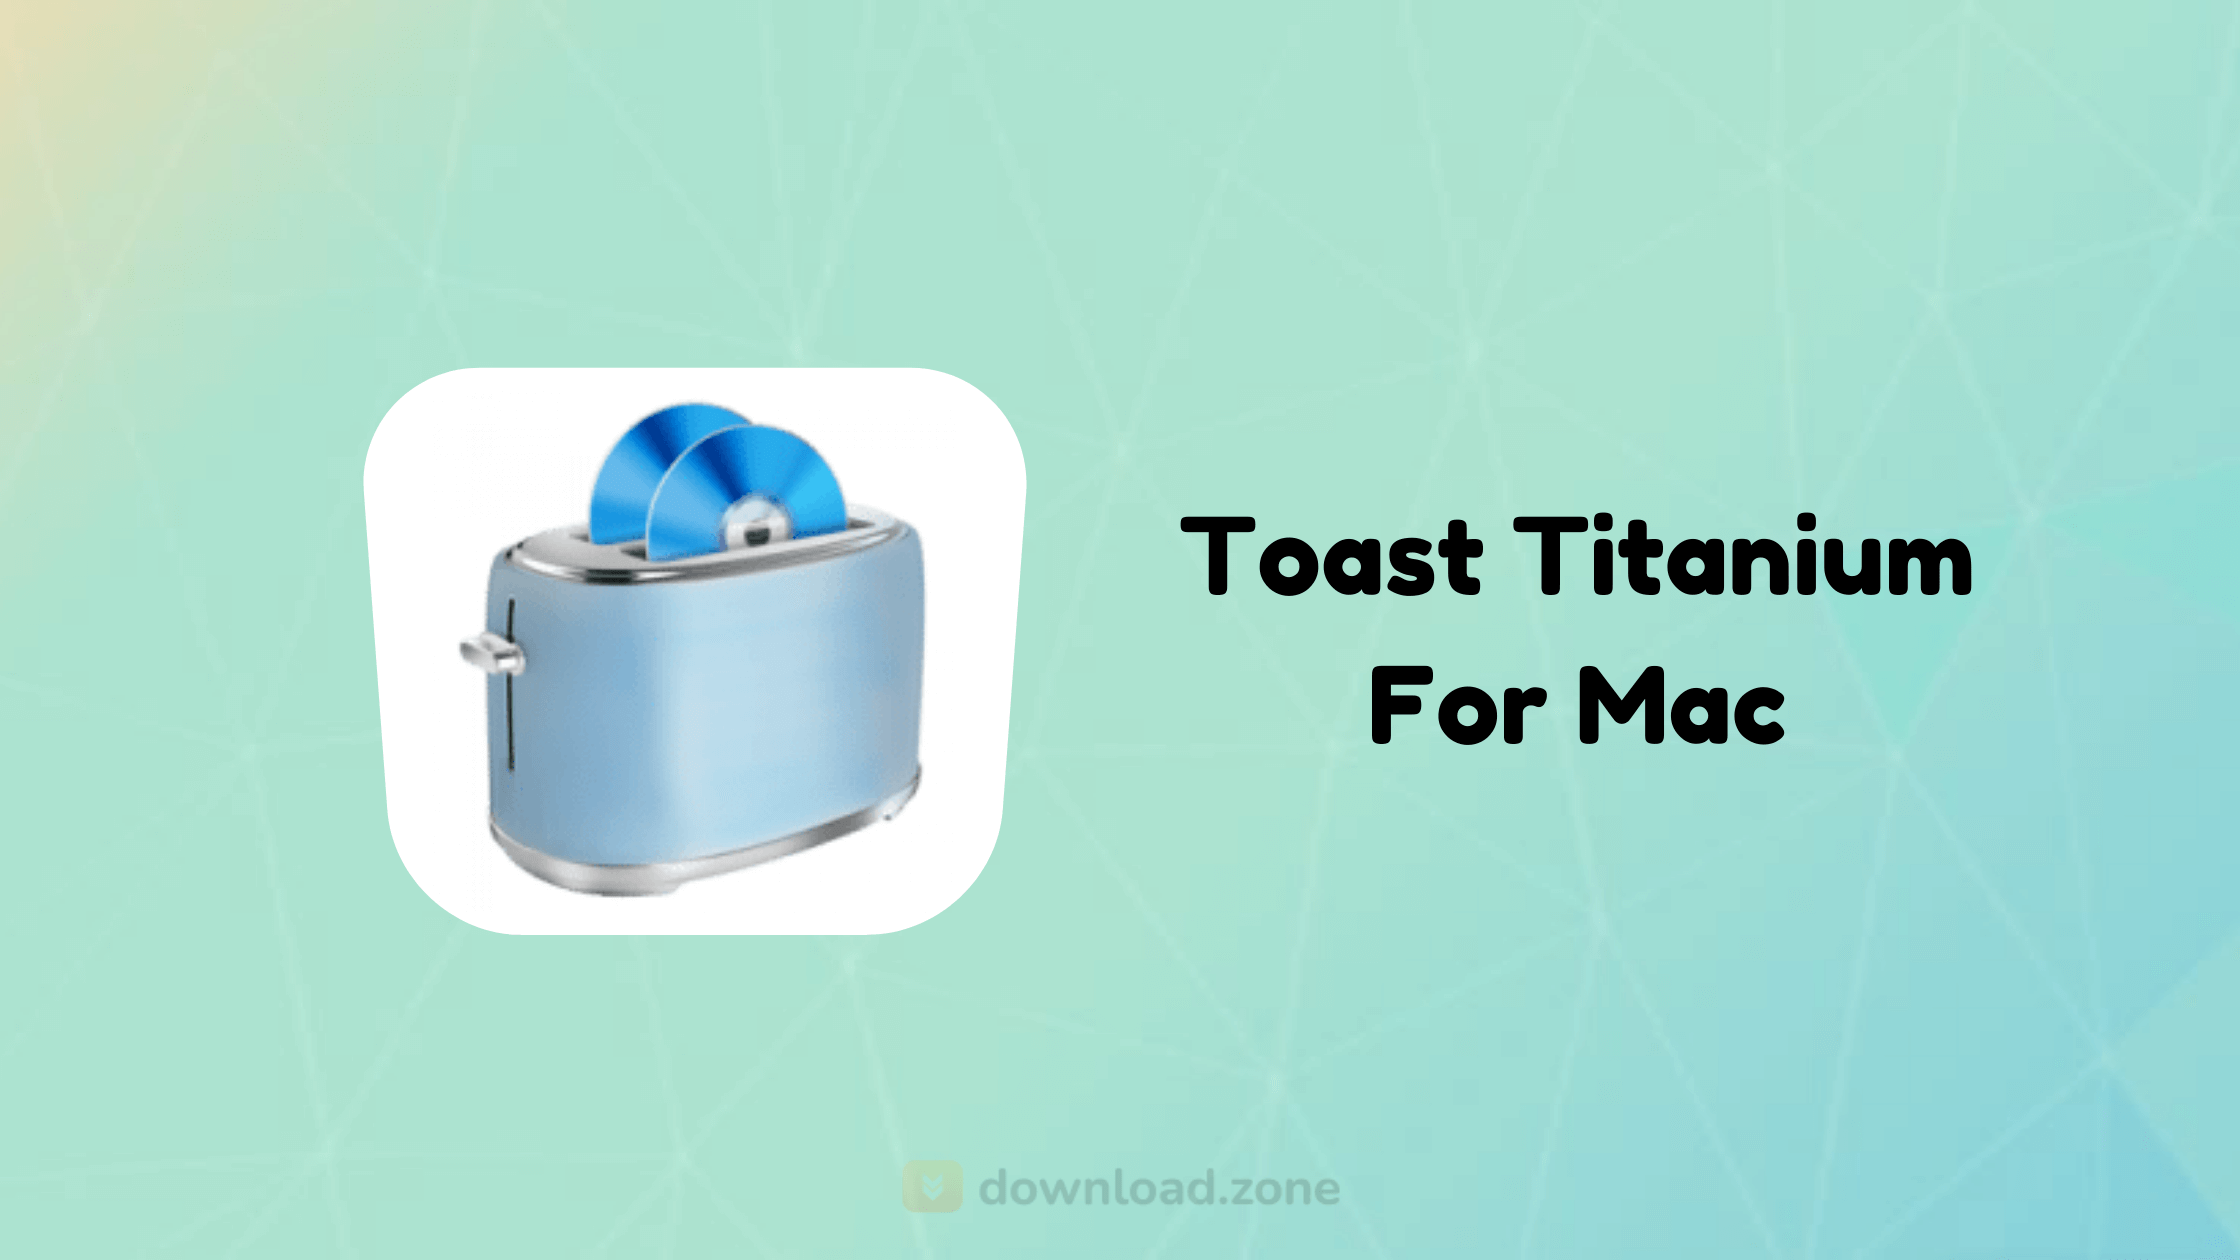 toast titanium 8 free download mac